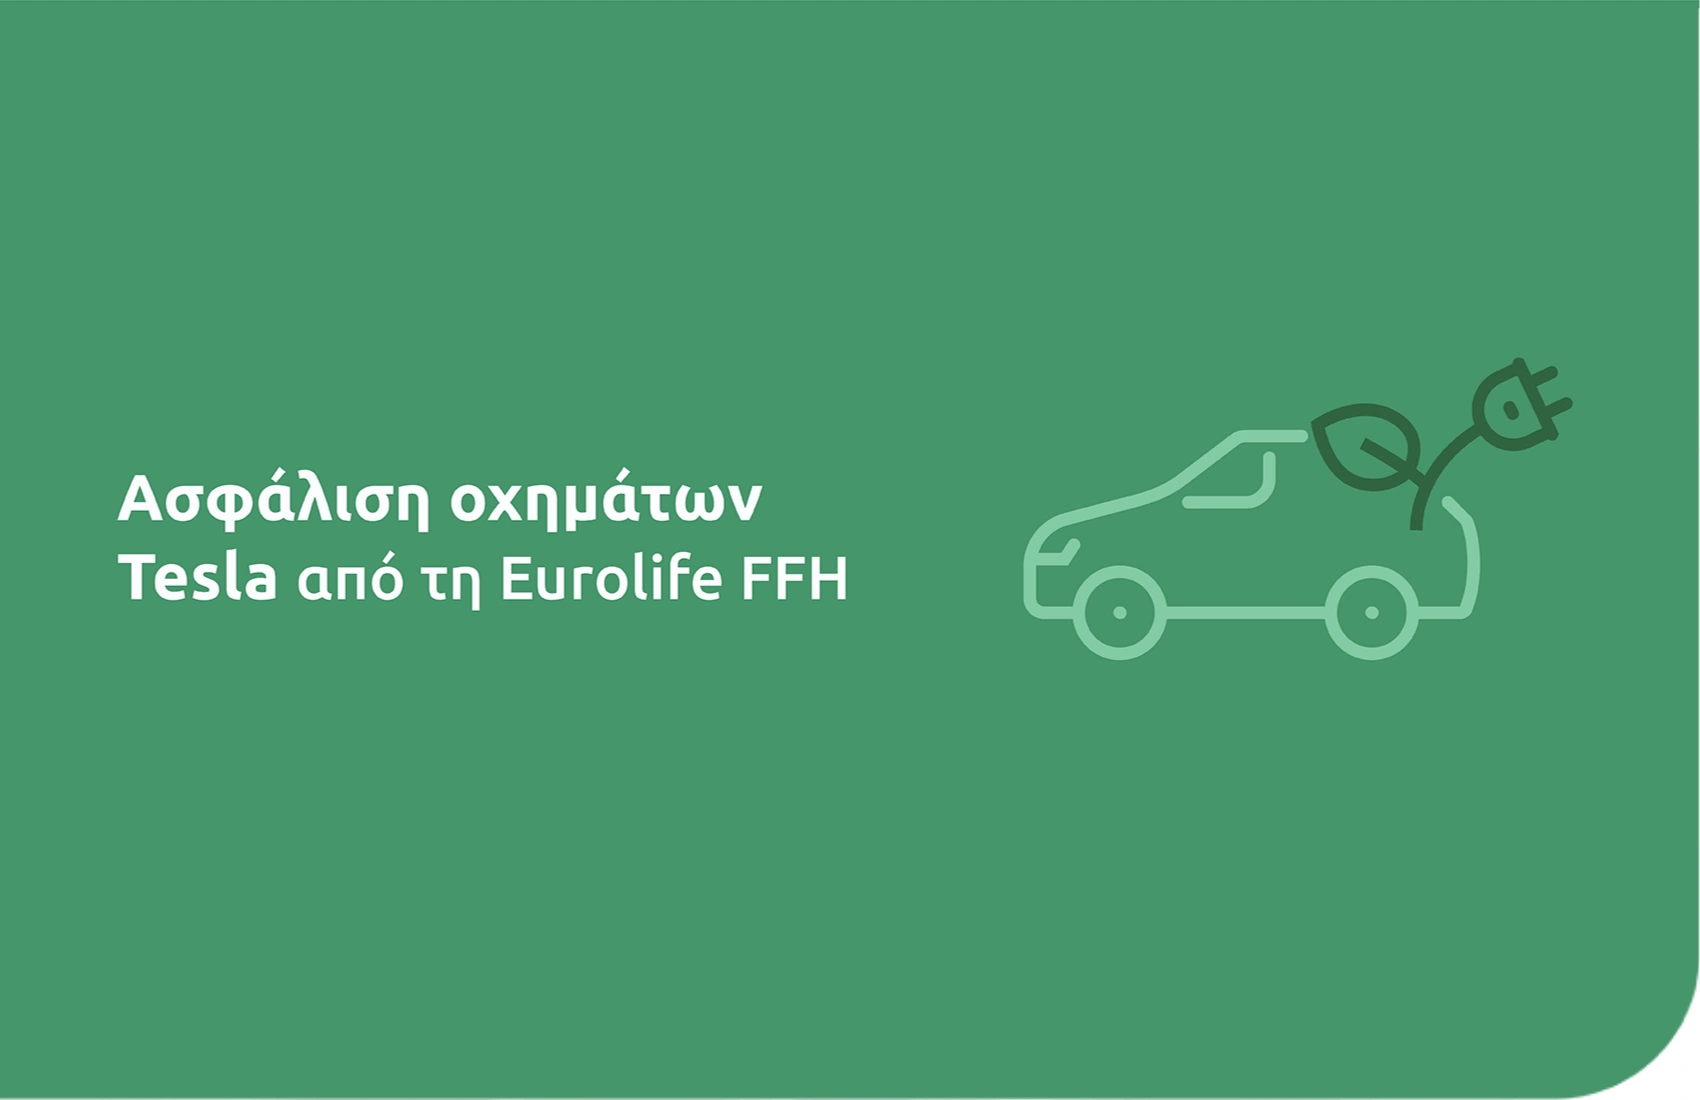 Ελλάδα: Ασφάλιση οχημάτων Tesla από τη Eurolife FFH